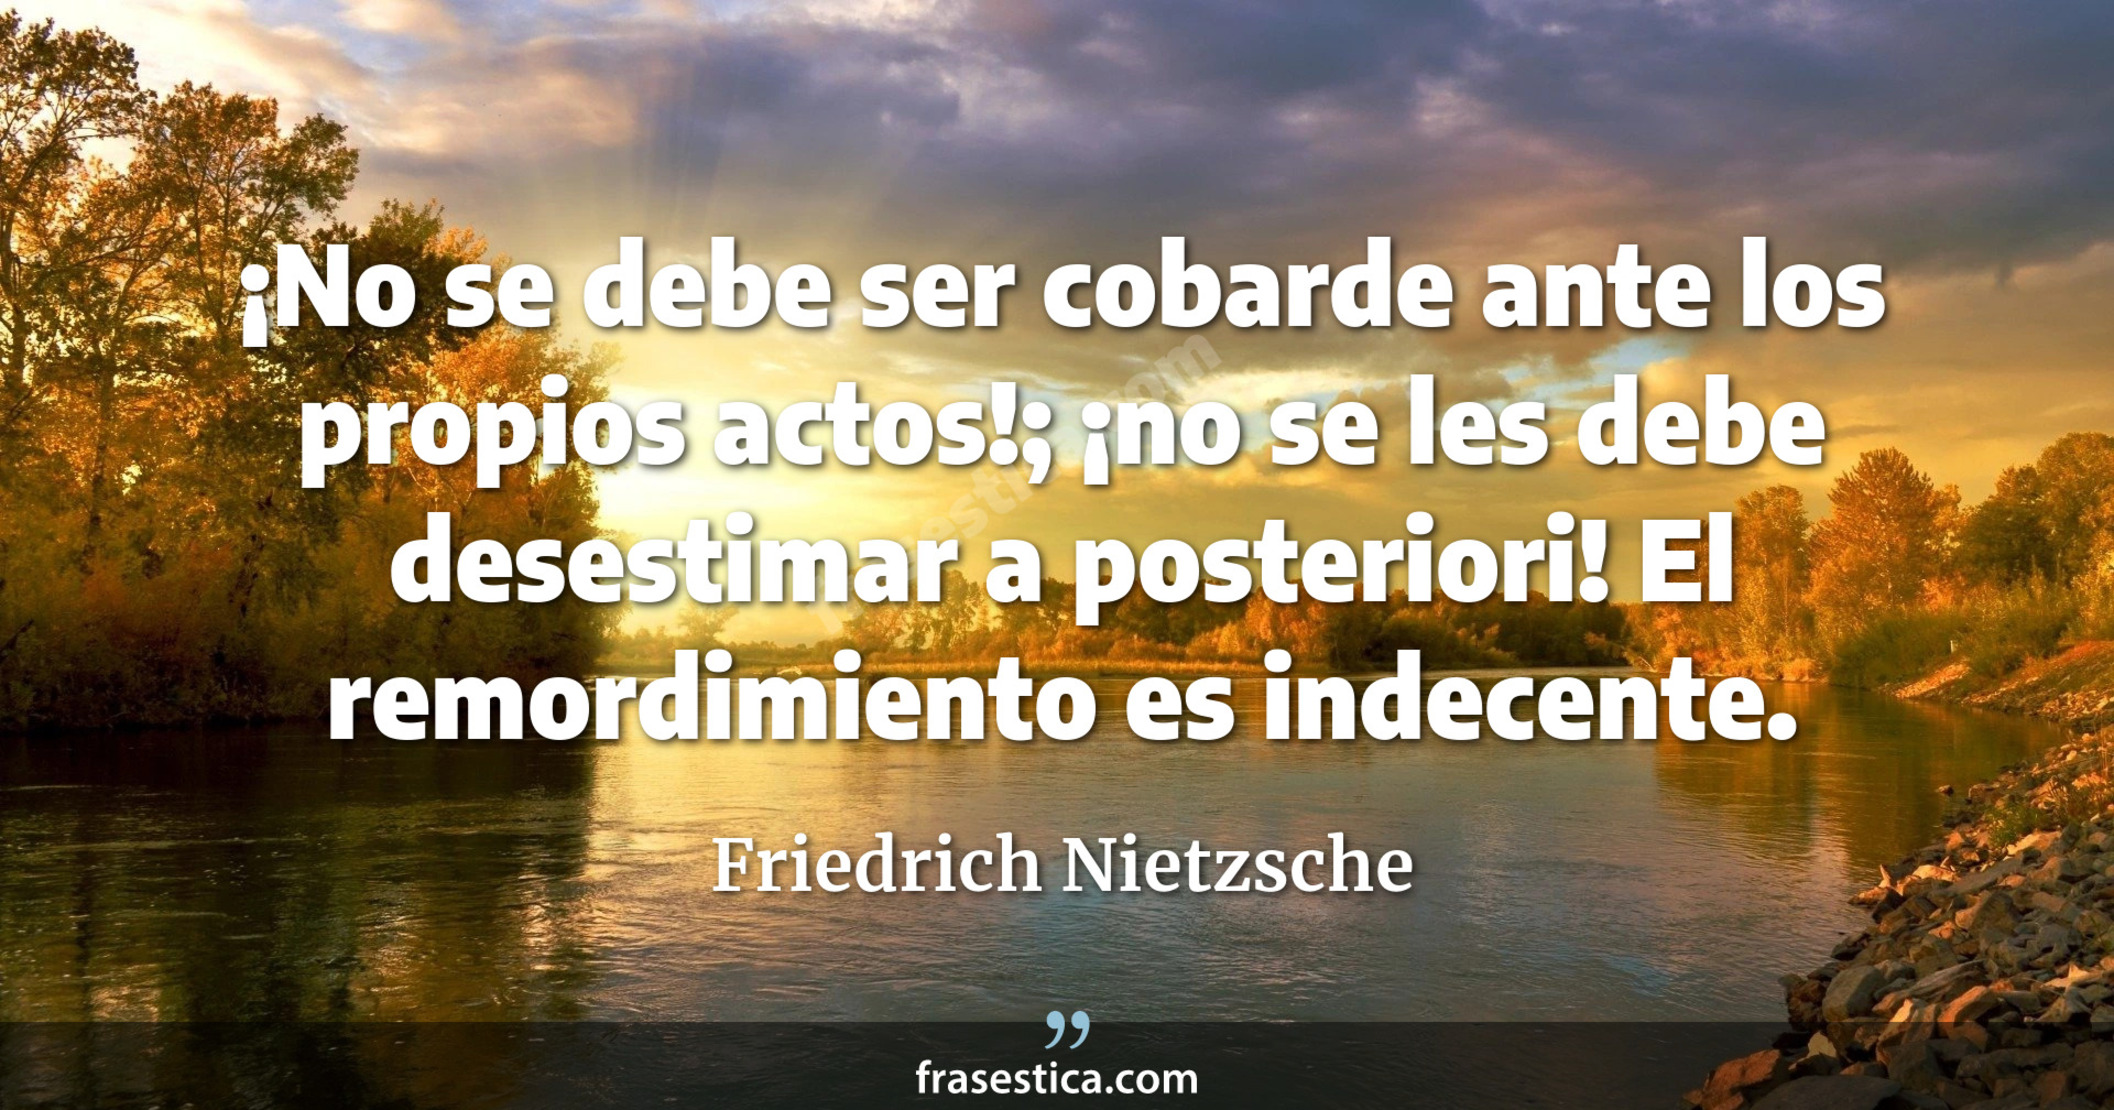 ¡No se debe ser cobarde ante los propios actos!; ¡no se les debe desestimar a posteriori! El remordimiento es indecente. - Friedrich Nietzsche